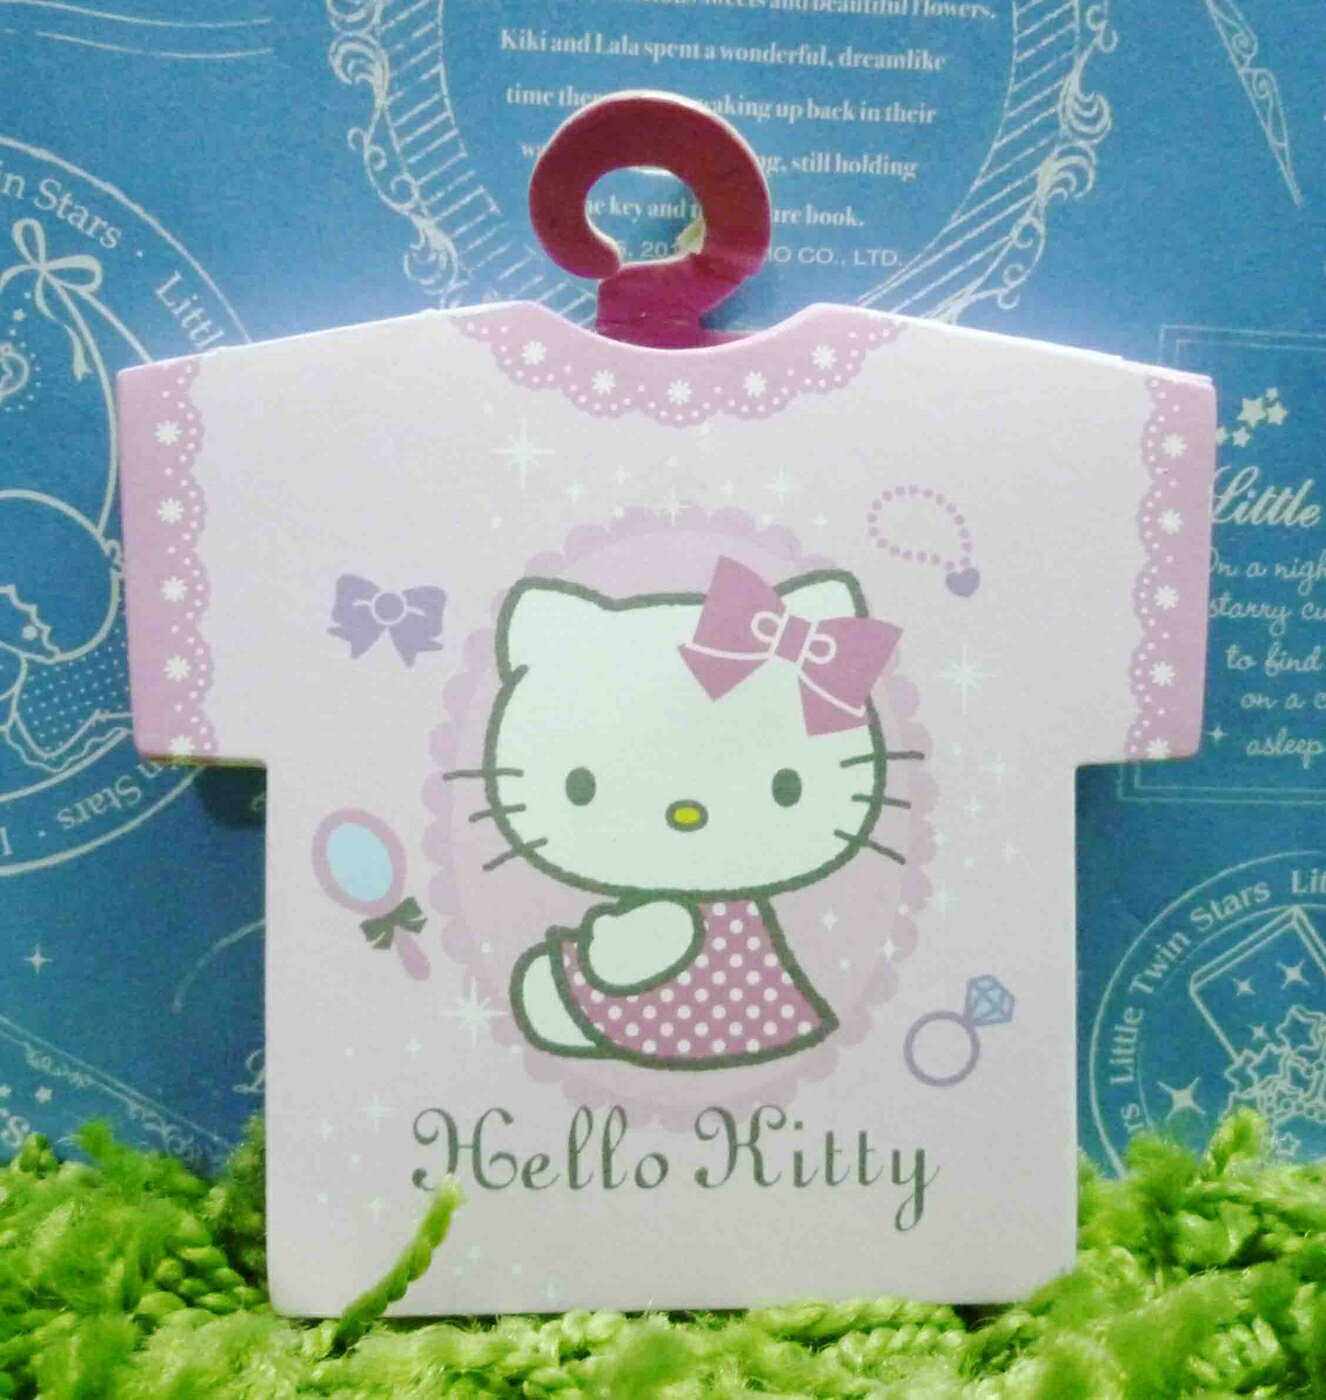 【震撼精品百貨】Hello Kitty 凱蒂貓 造型便條紙-粉衣服圖案【共1款】 震撼日式精品百貨